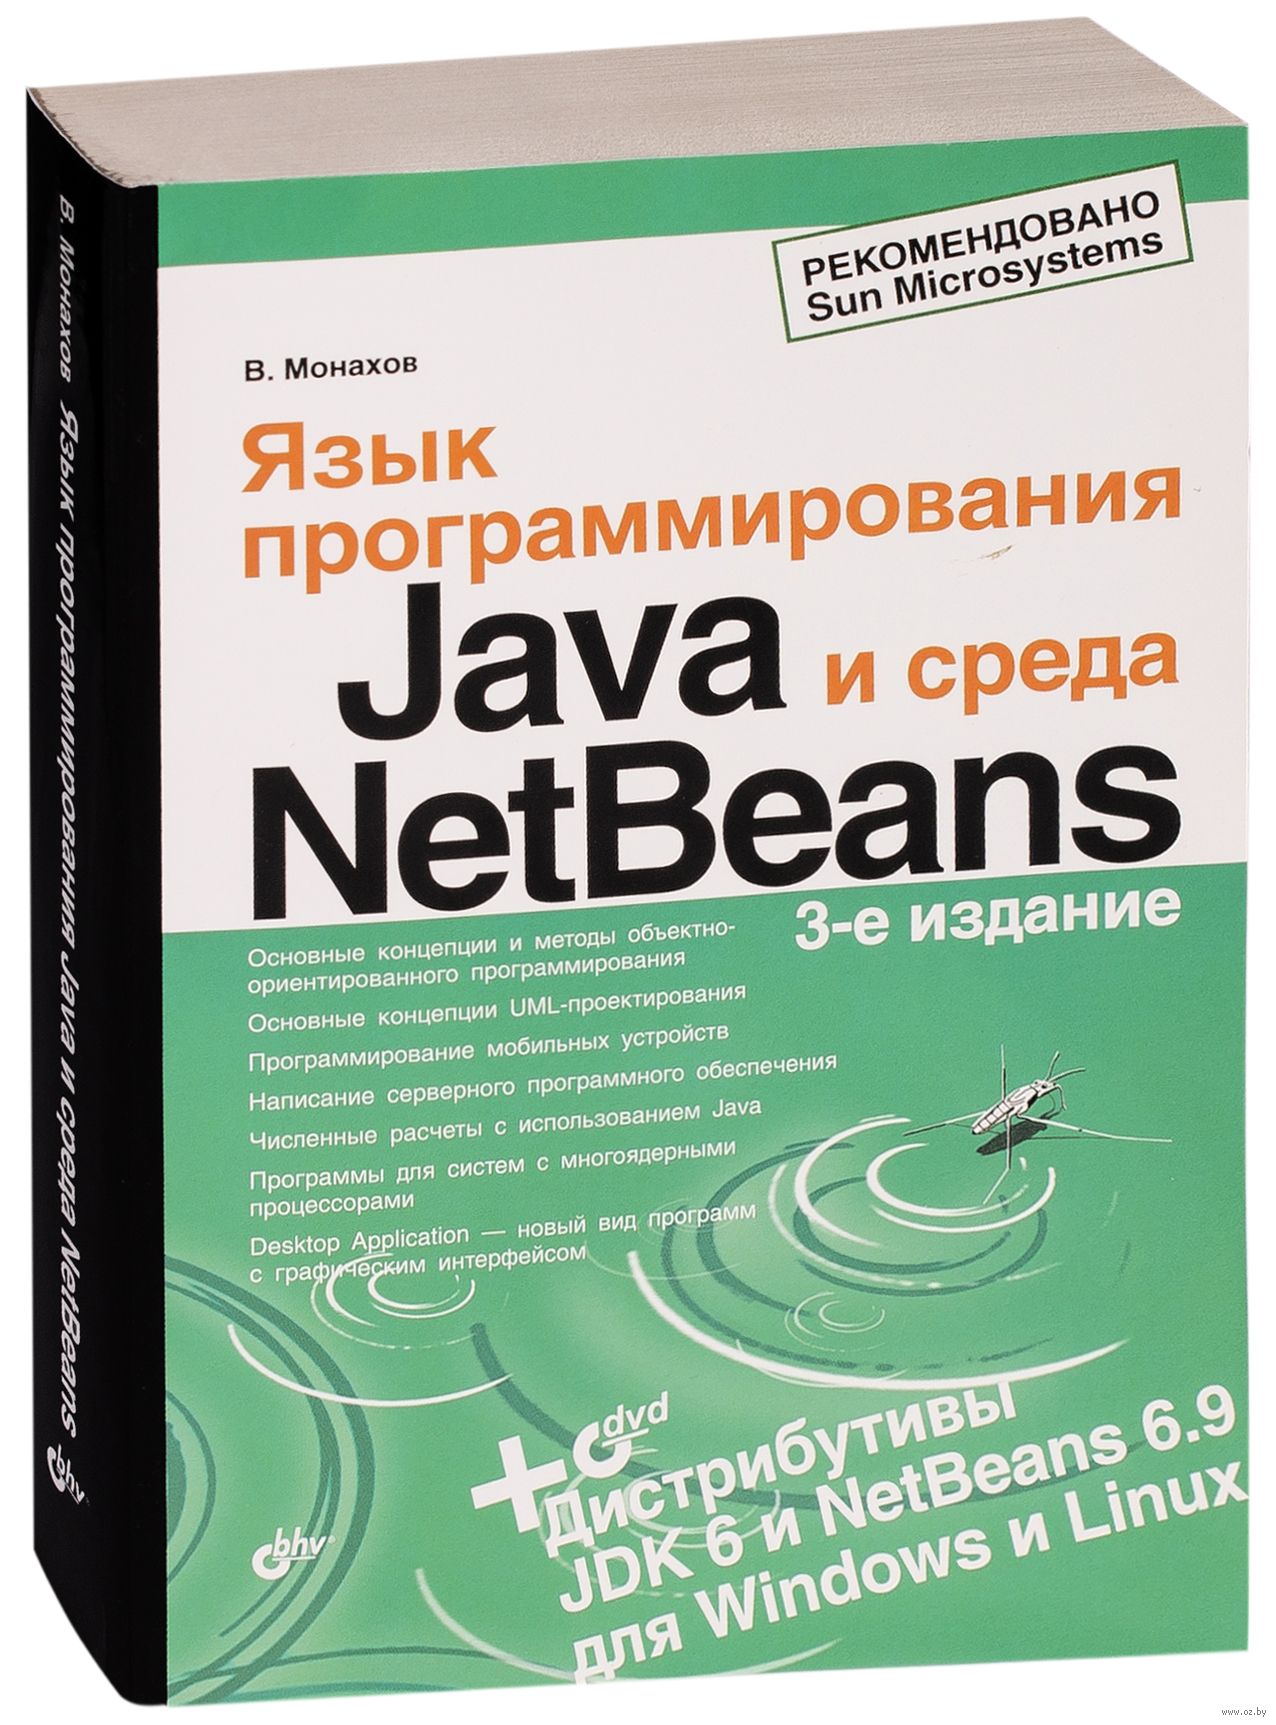 Язык программирования Java и среда NetBeans ( DVD) В Монахов. oz.by. 